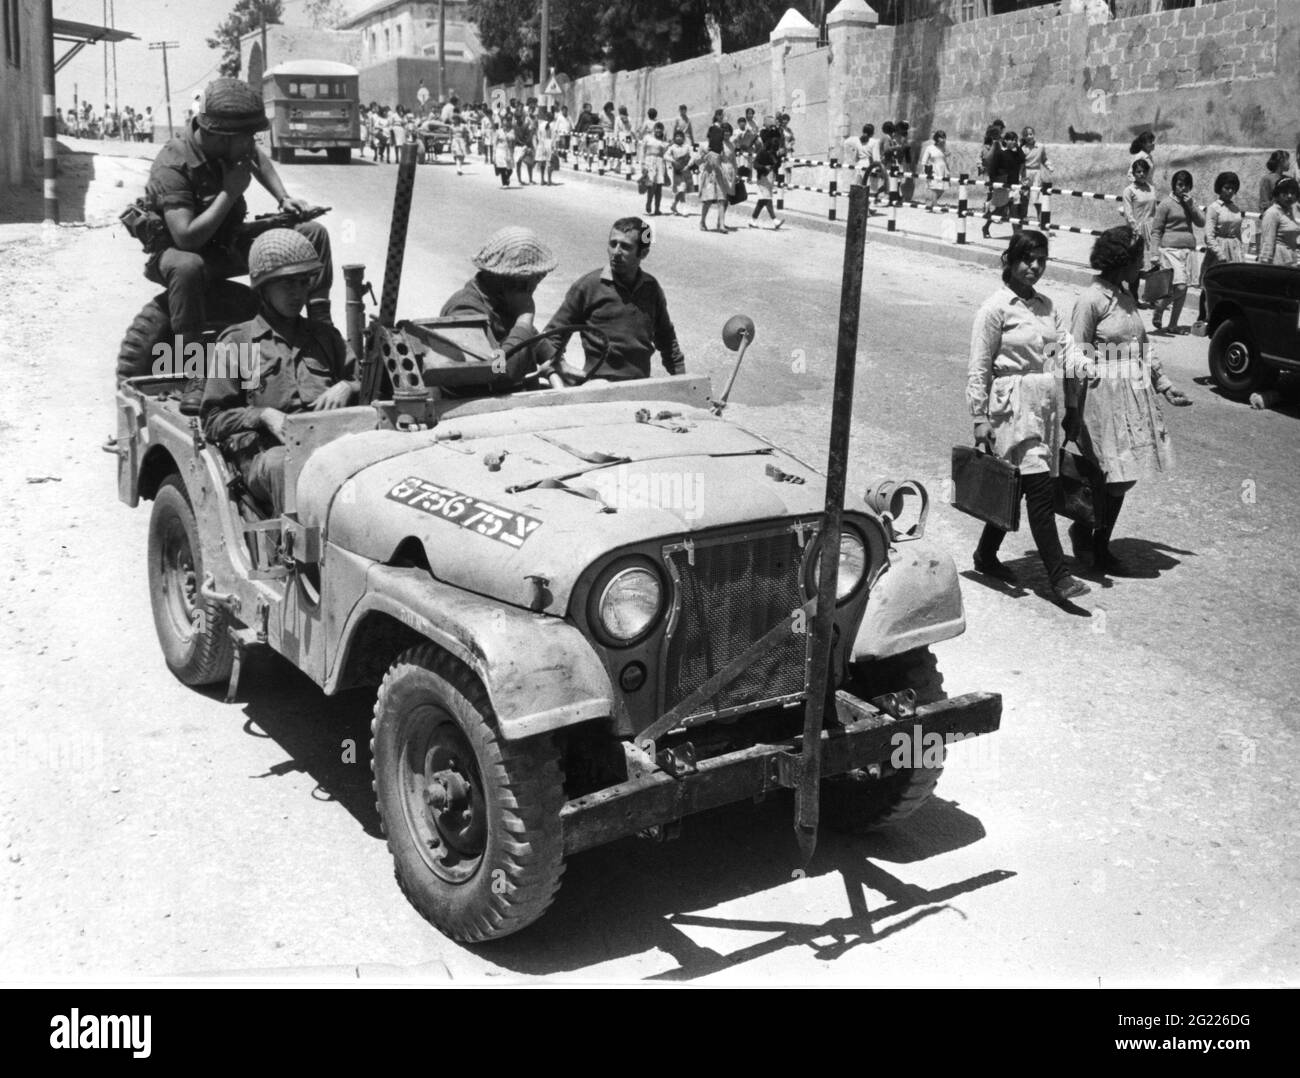 Militaire, Israël, armée, garde mobile à Gaza, 26.4.1969, INFO-AUTORISATION-DROITS-SUPPLÉMENTAIRES-NON-DISPONIBLE Banque D'Images